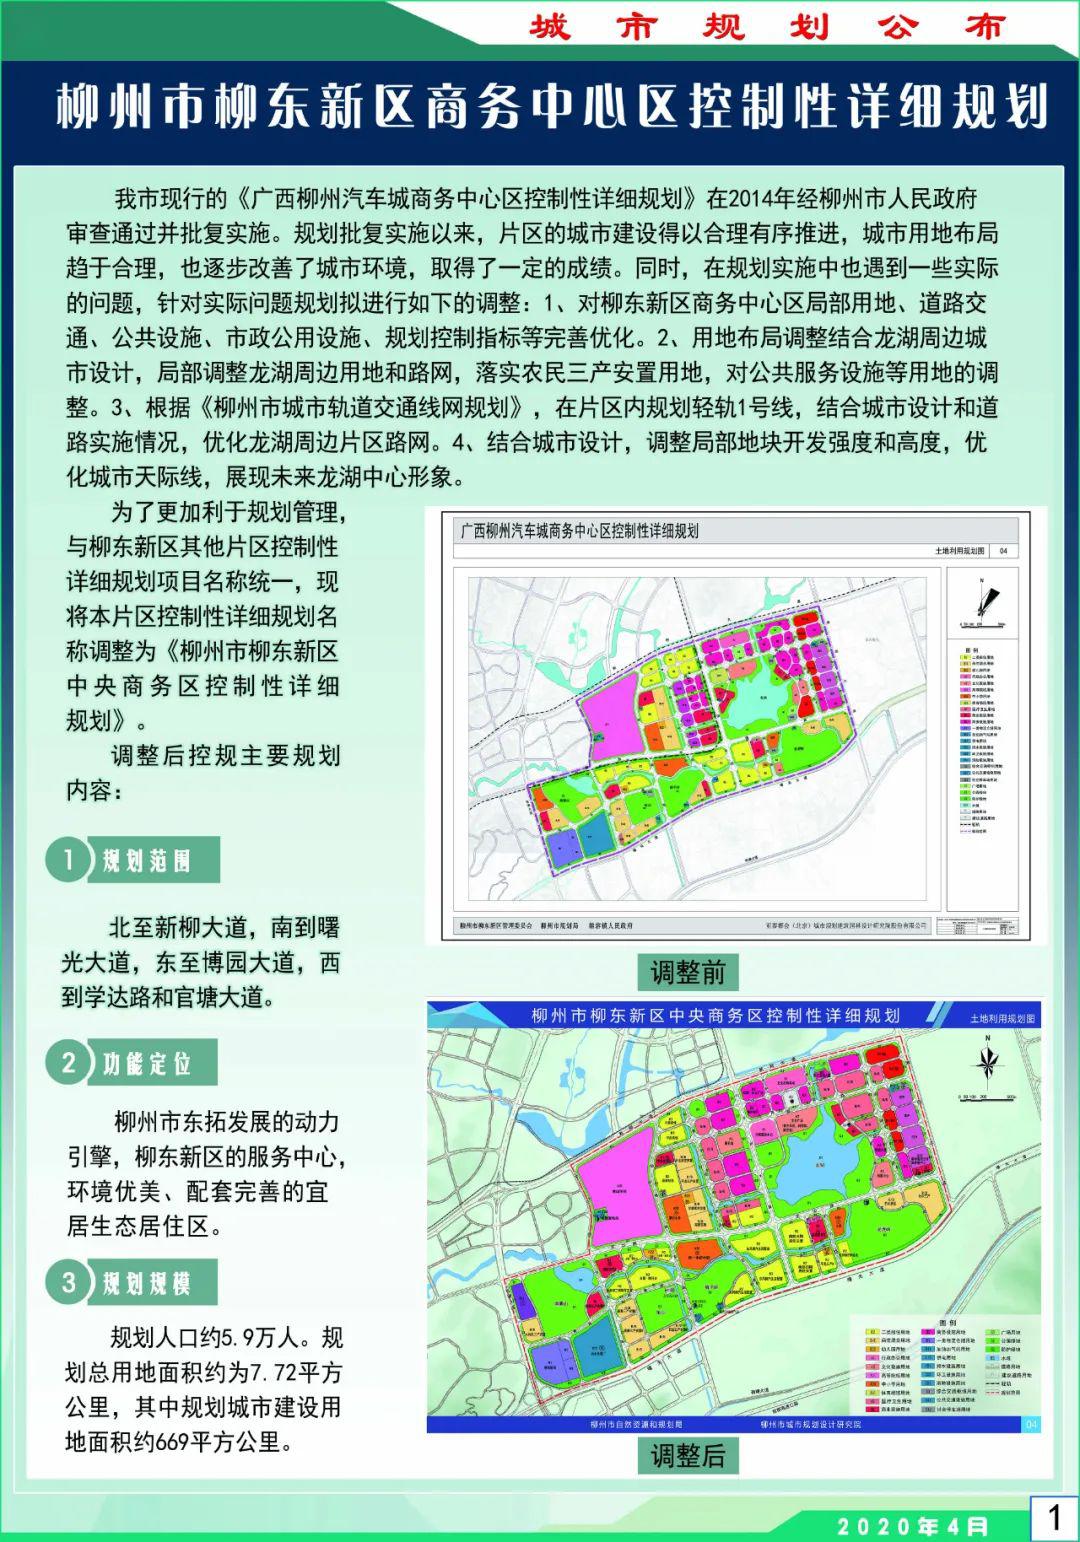 【期待】柳州又3个片区规划出炉,未来这里要爆发!_东新区